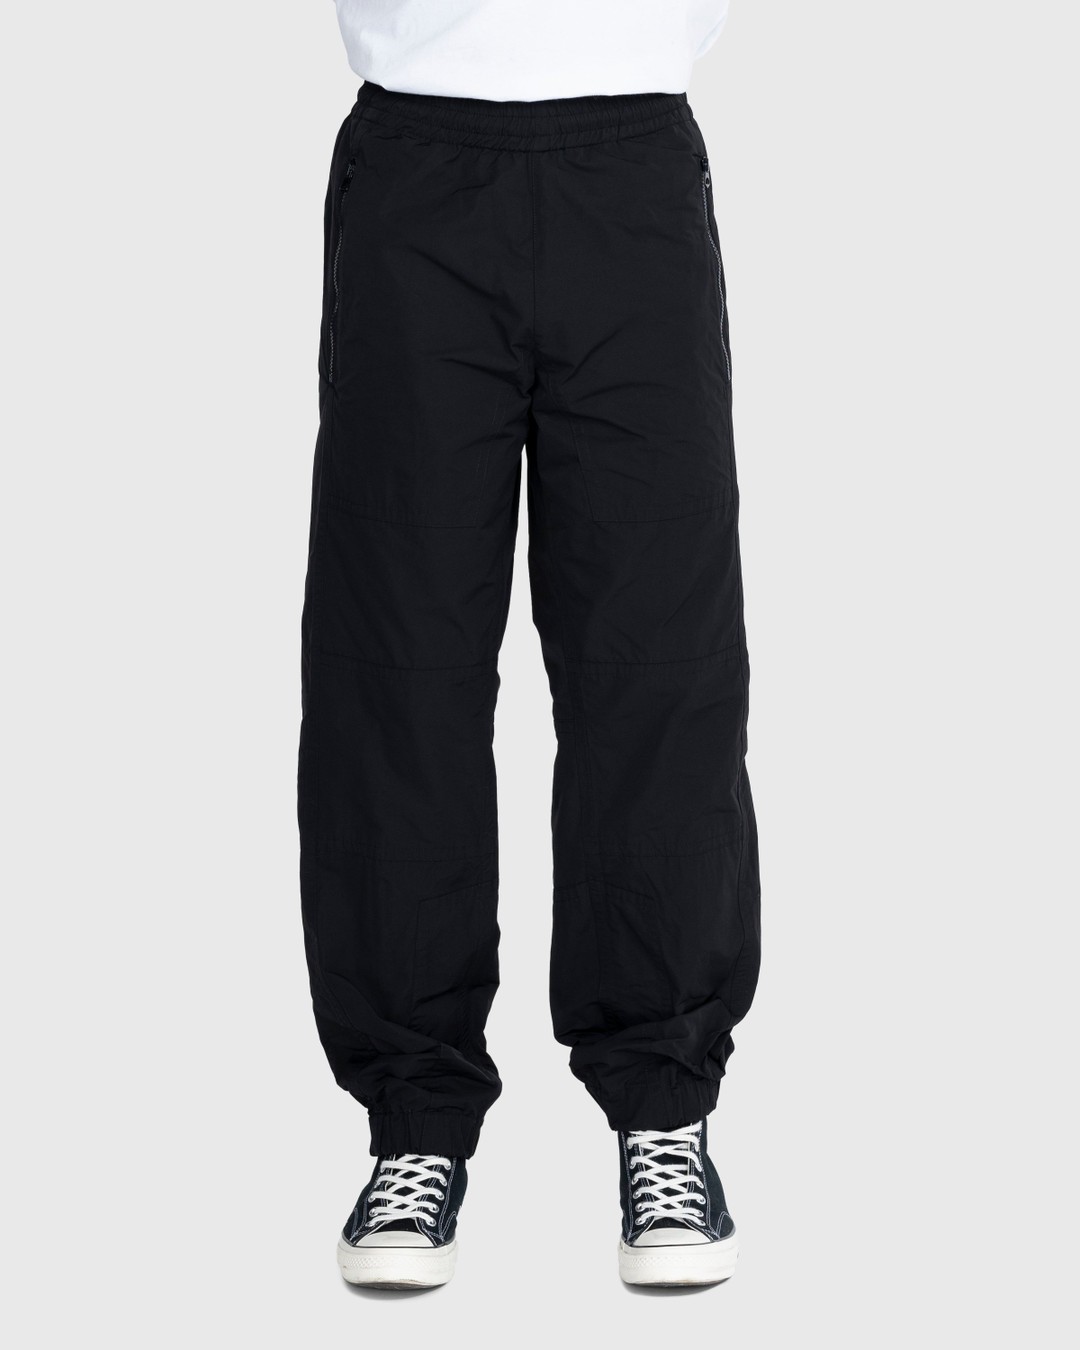 Dries van Noten – Peatt Pants - Active Pants - Black - Image 2